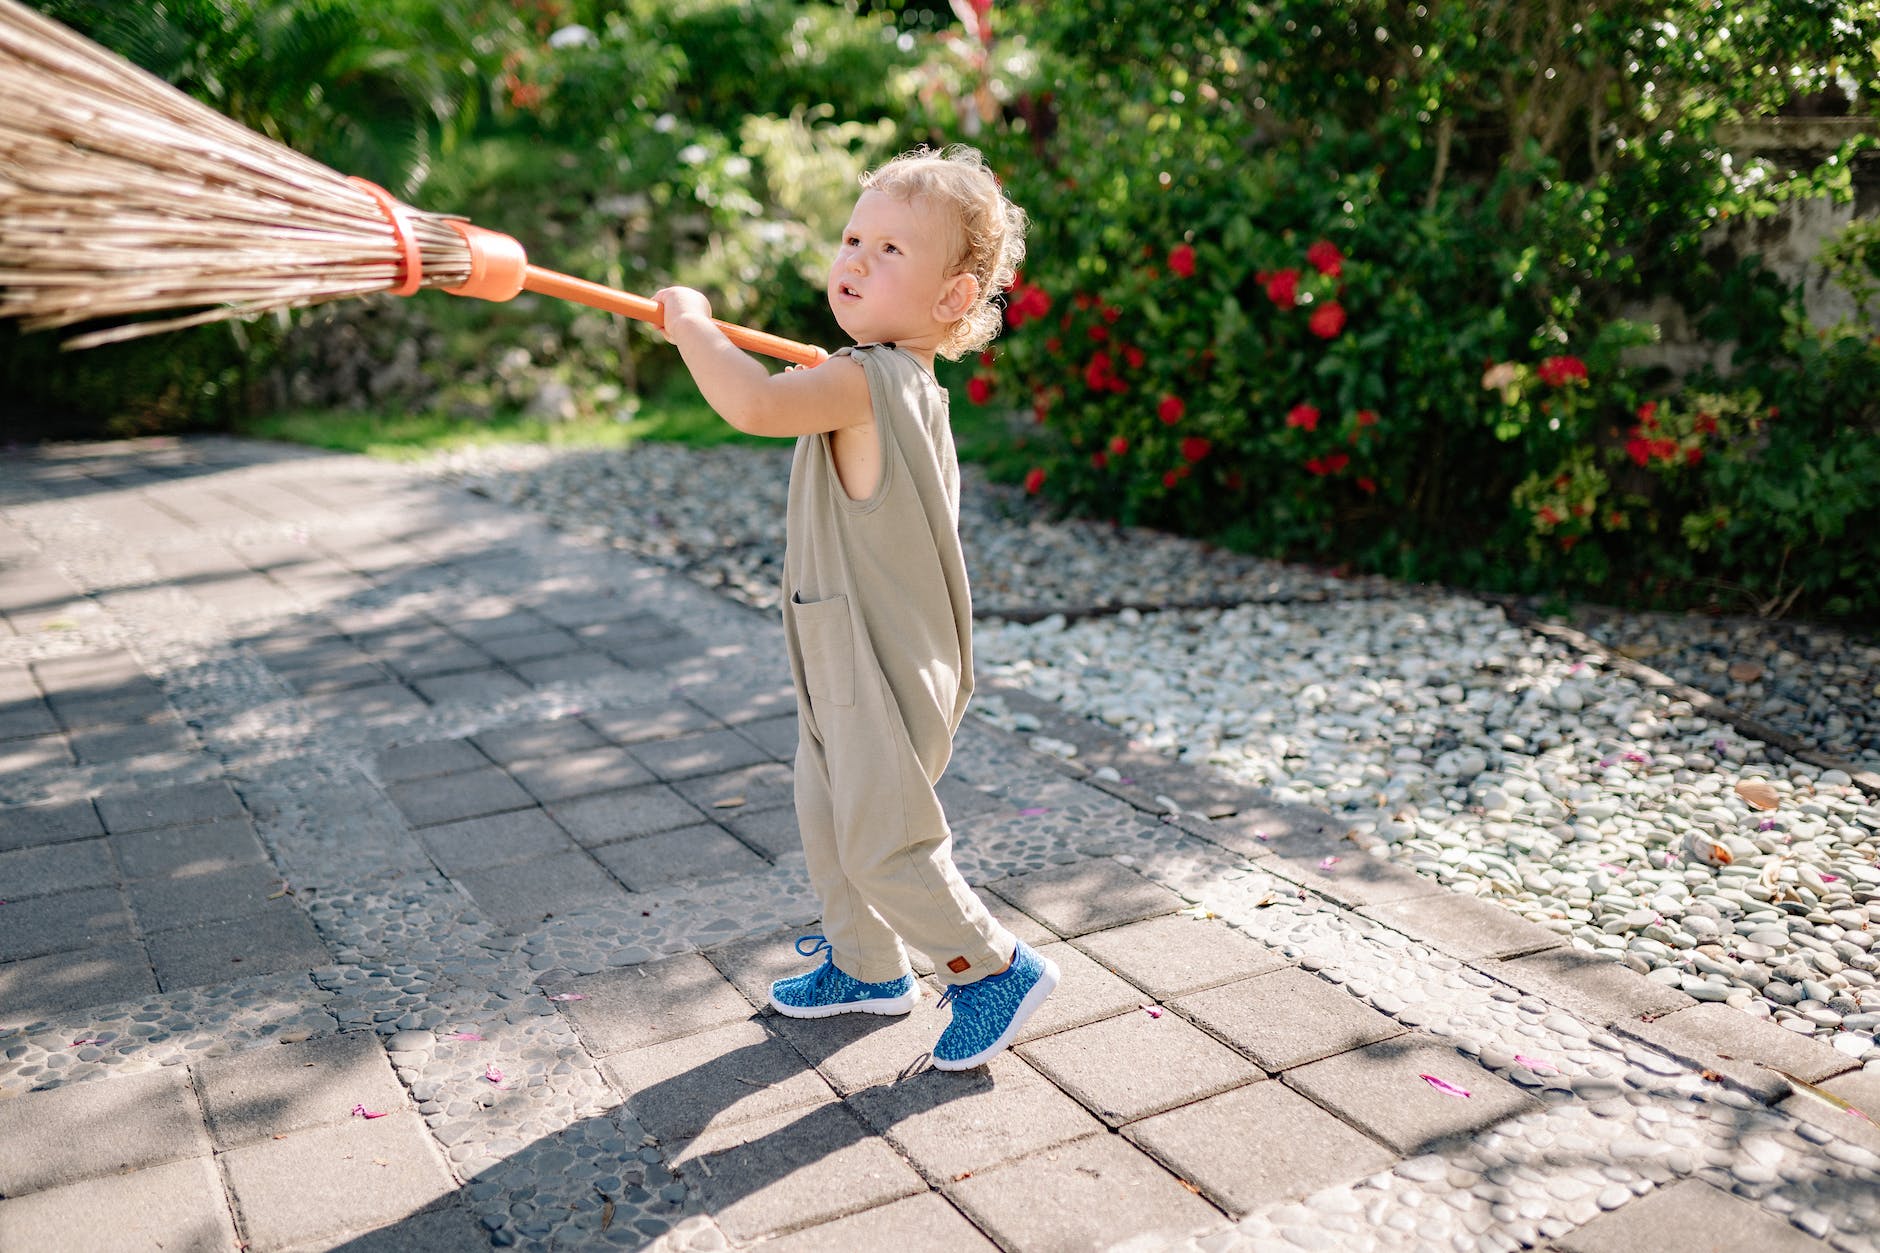 funny kid with broom on walkway in garden in sunlight